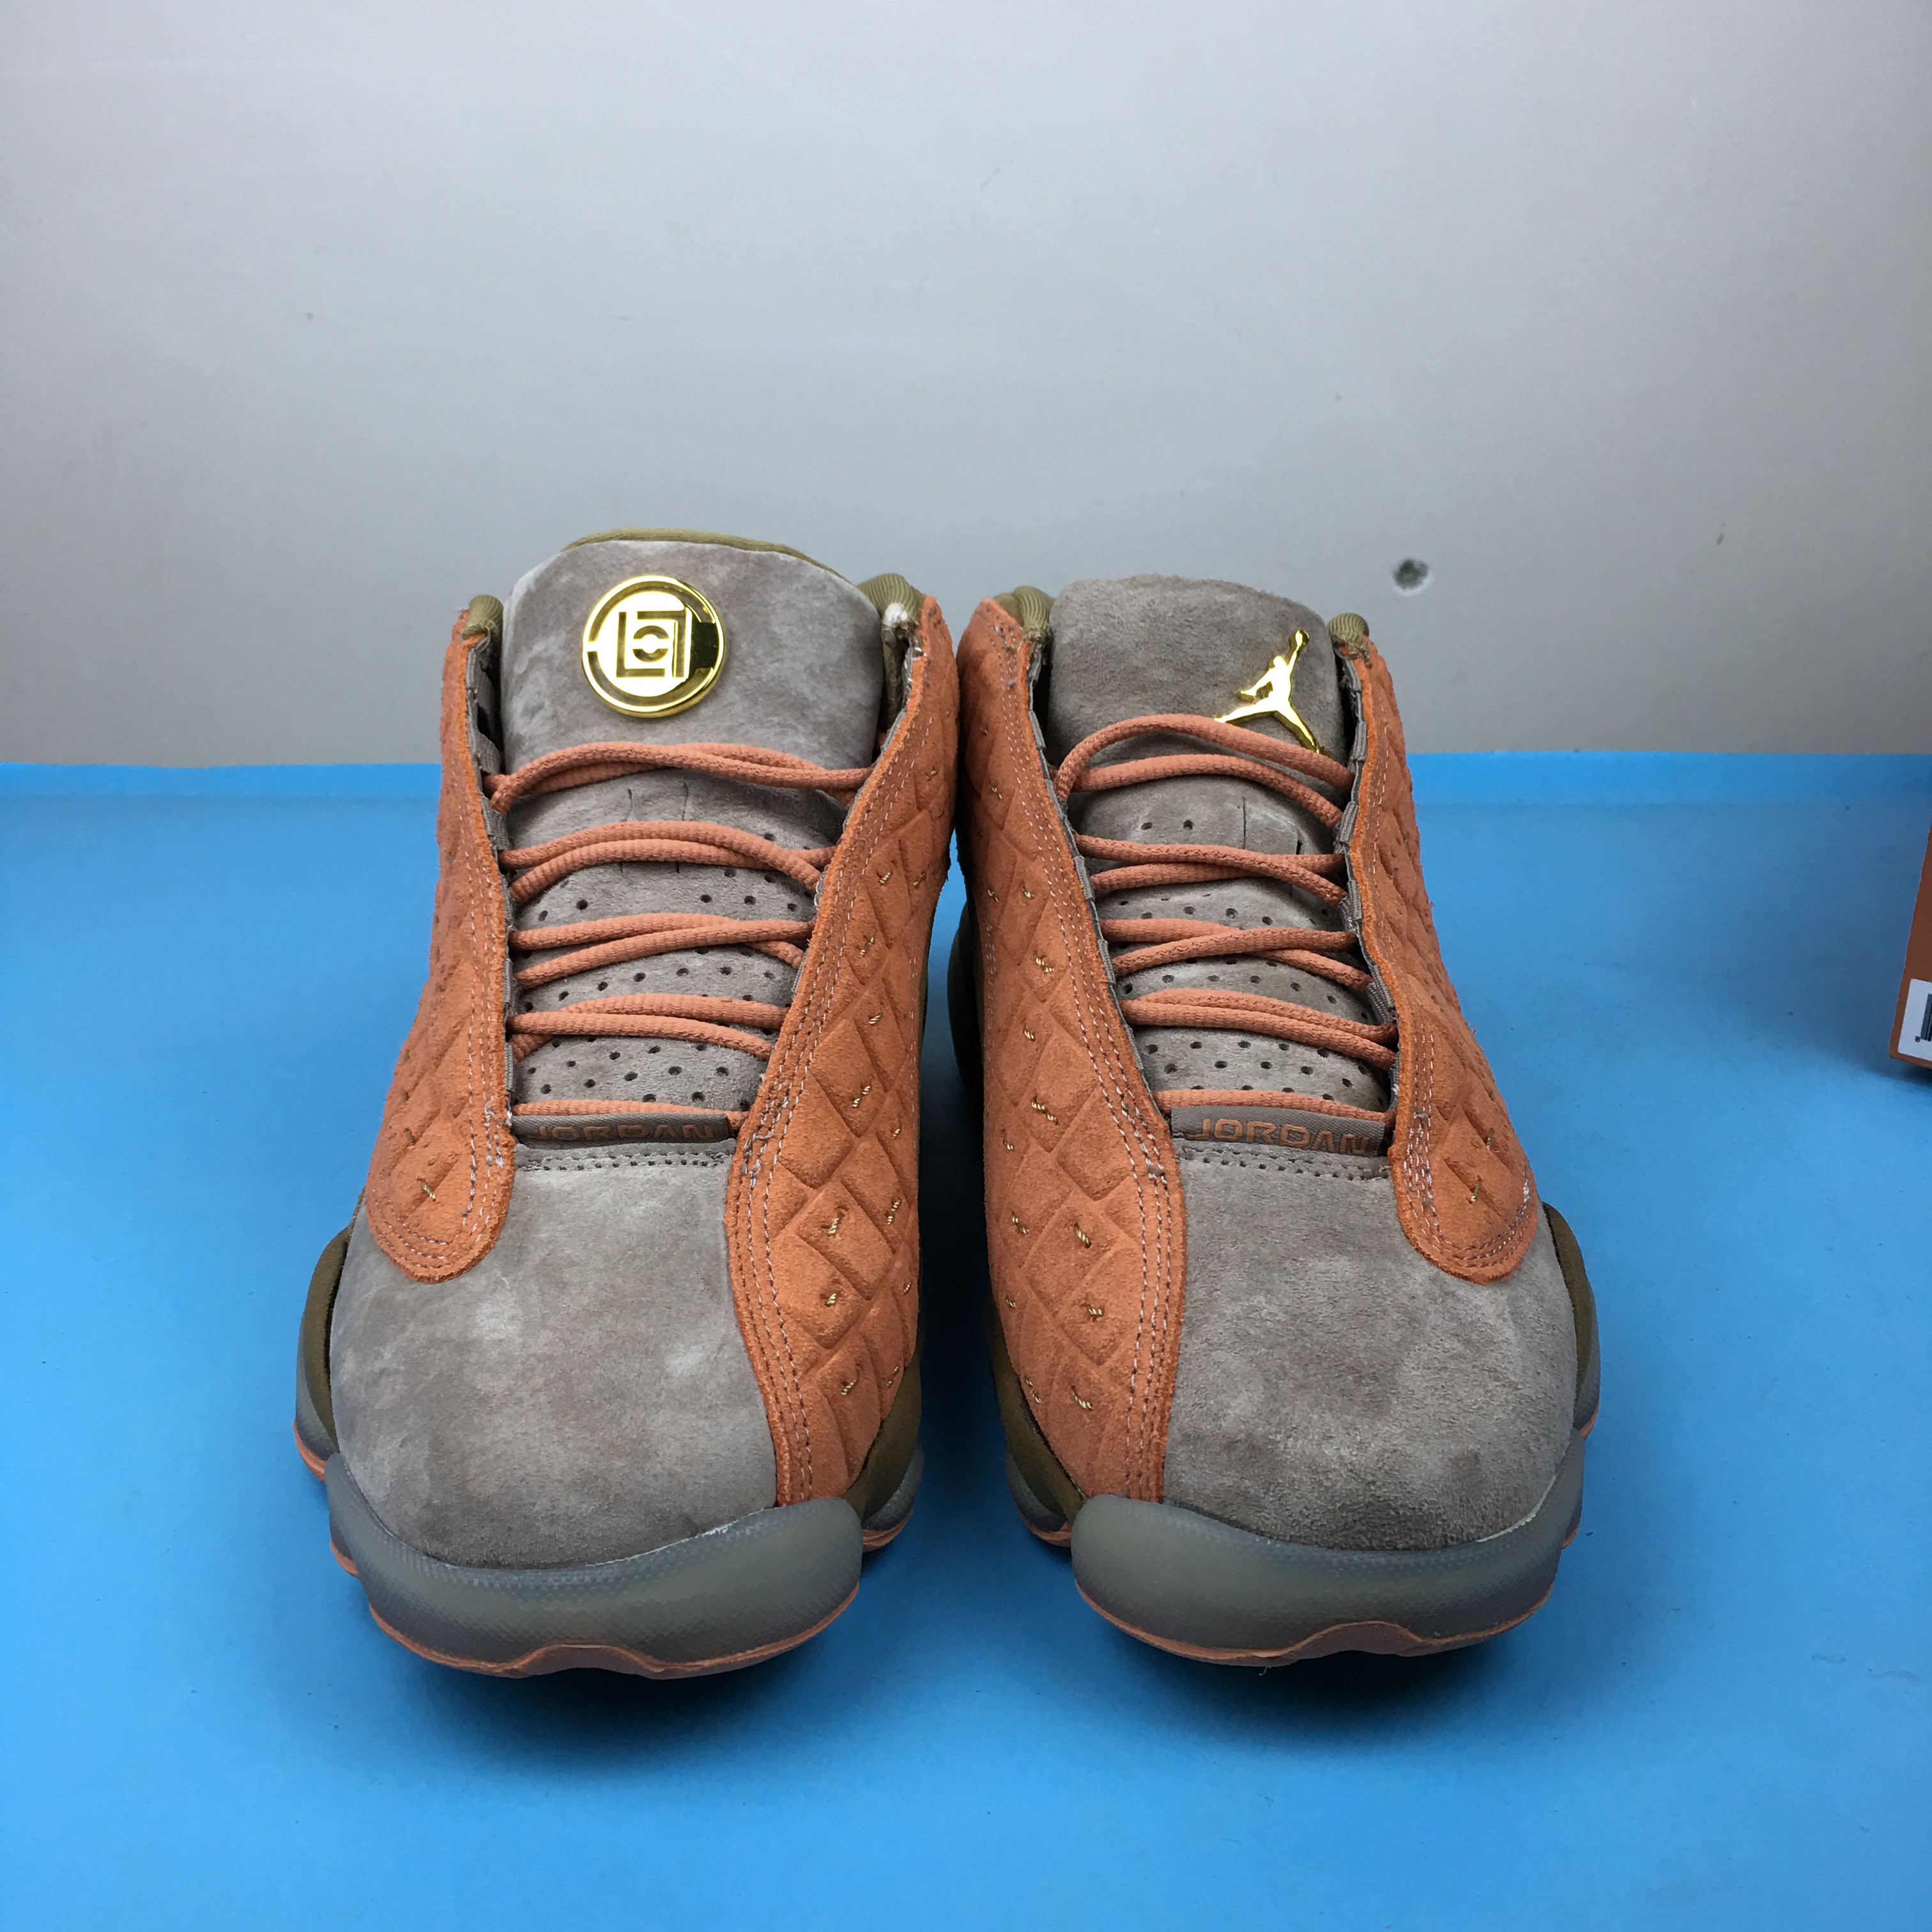 CLOT x Air Jordan 13 Low Grey Orange Brown Shoes